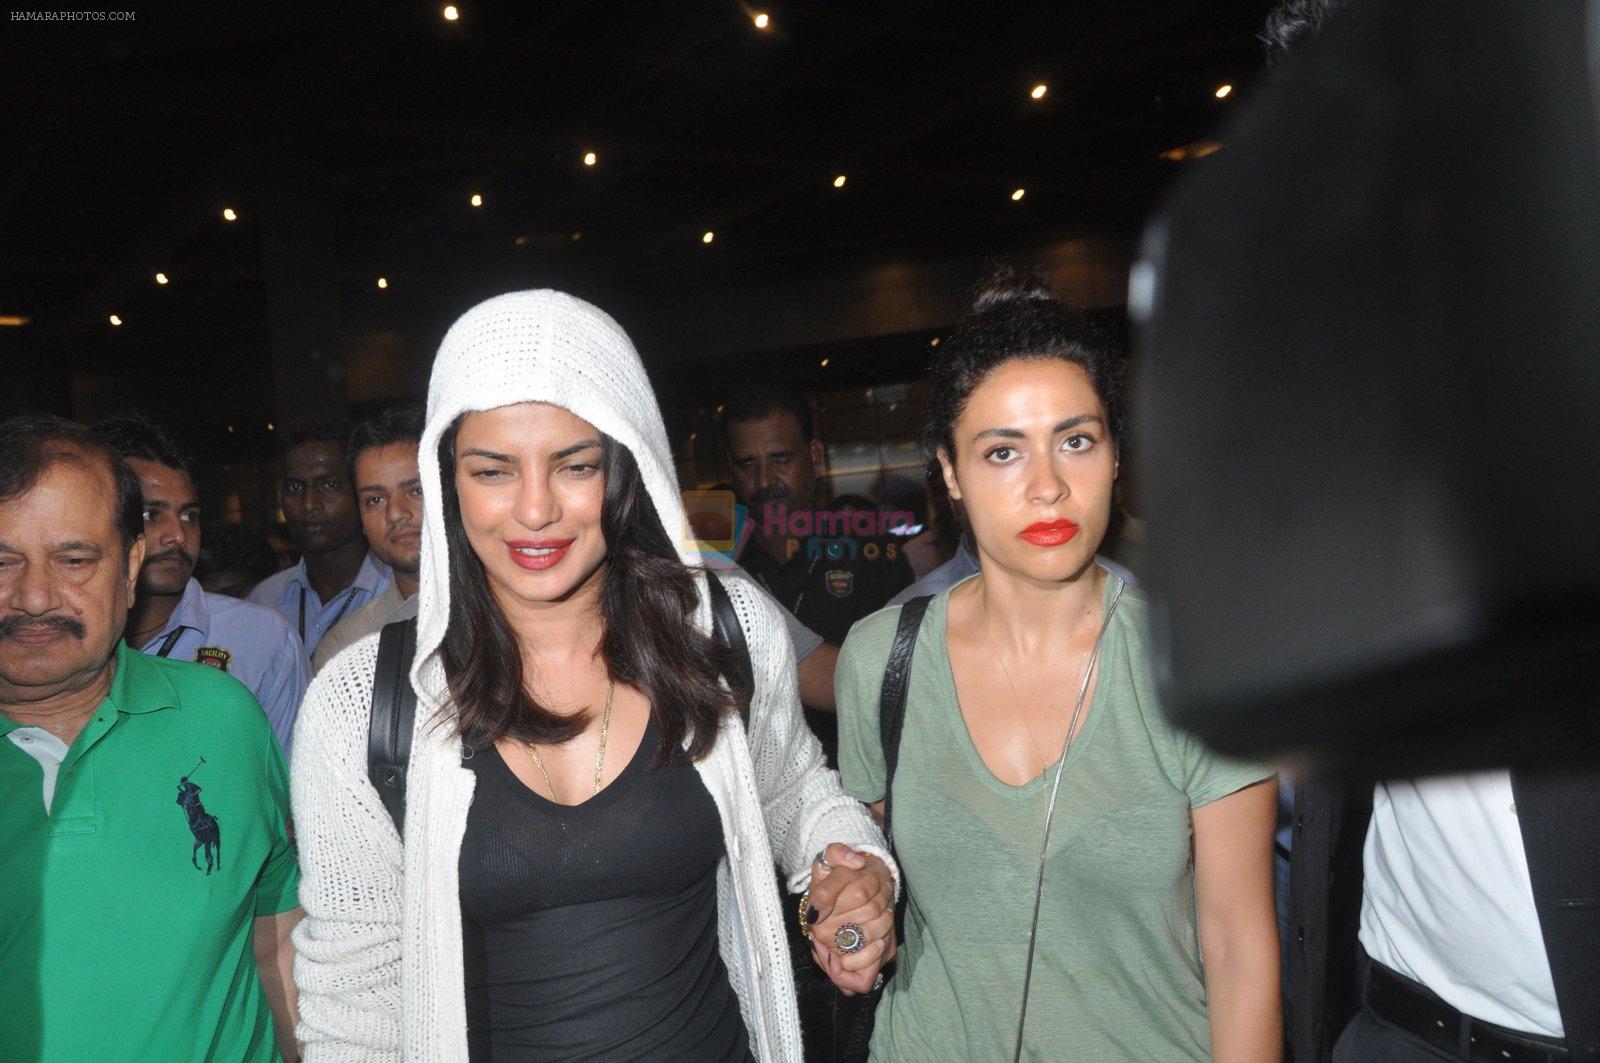 Priyanka Chopra snapped at airport in Mumbai on 27th May 2016